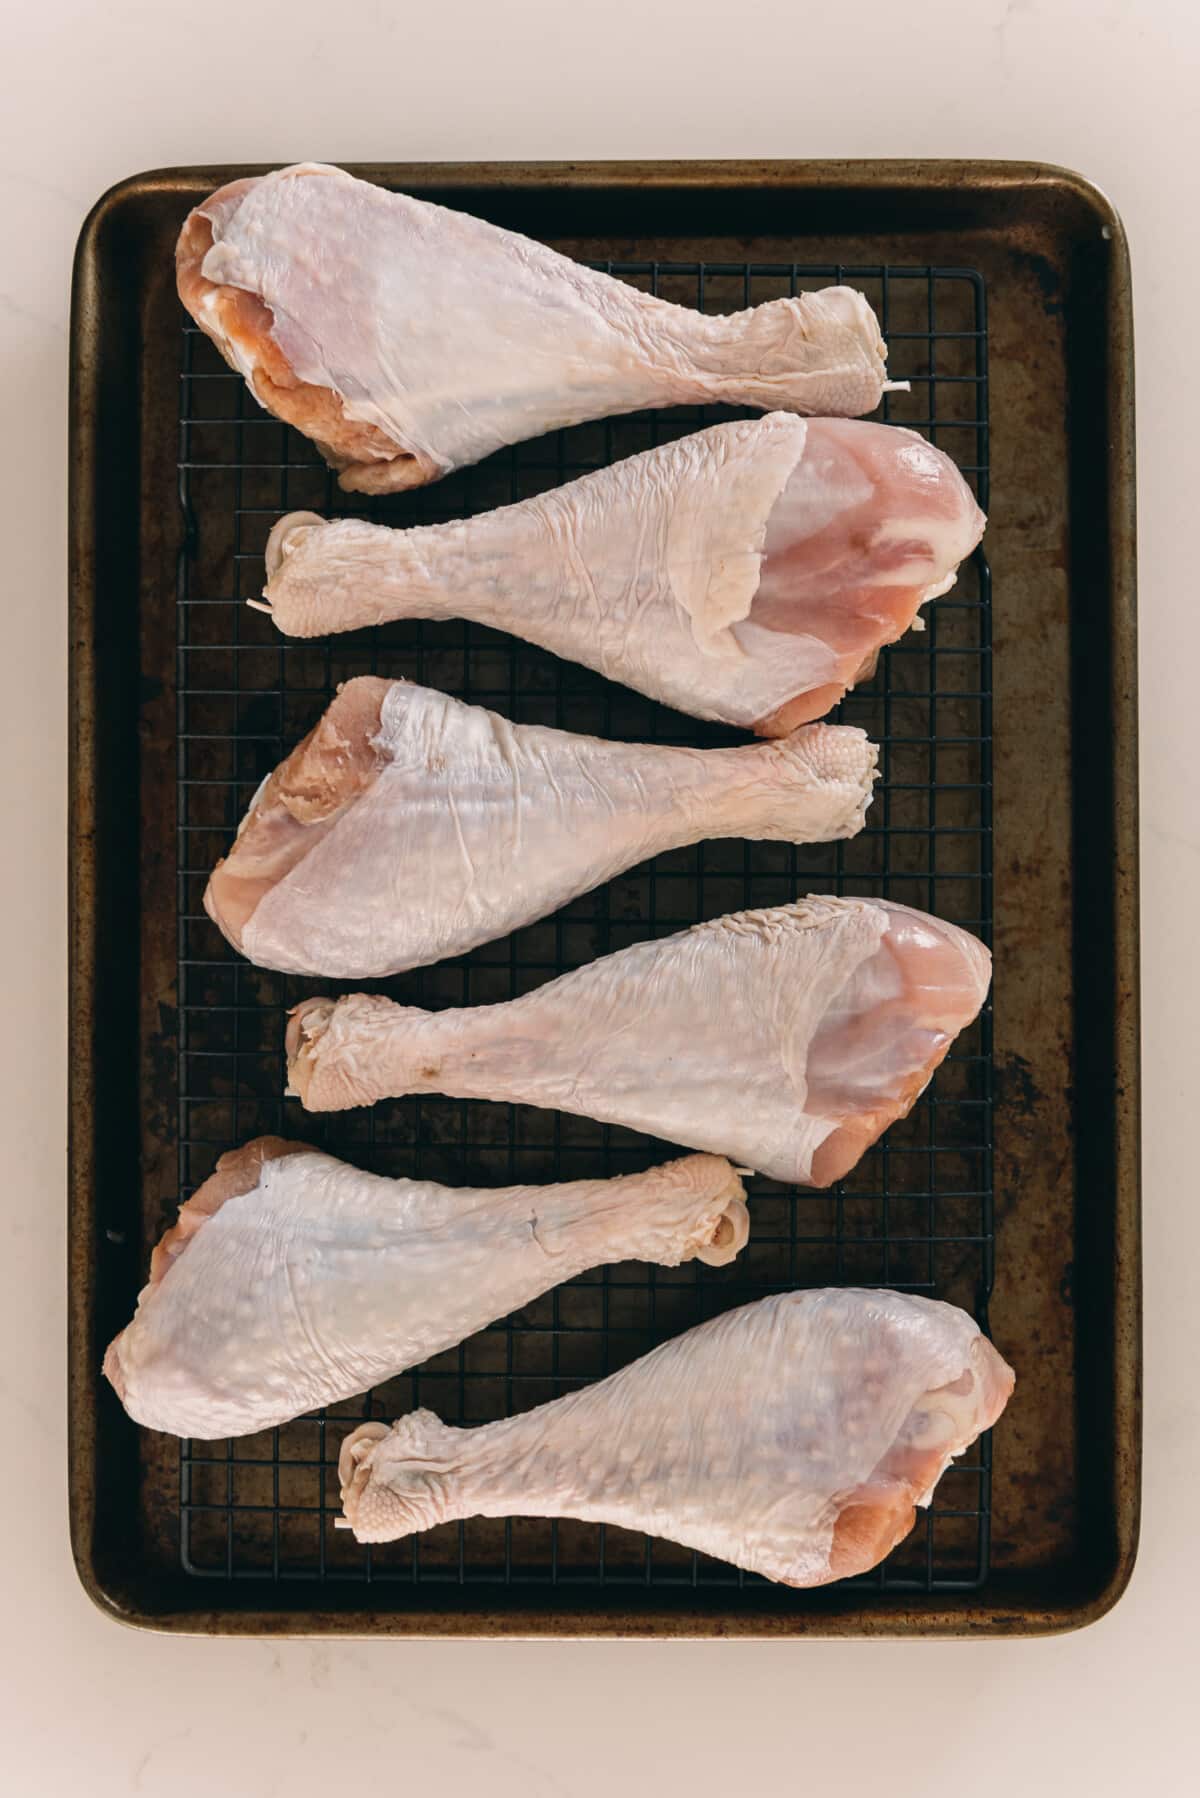 Raw turkey legs.